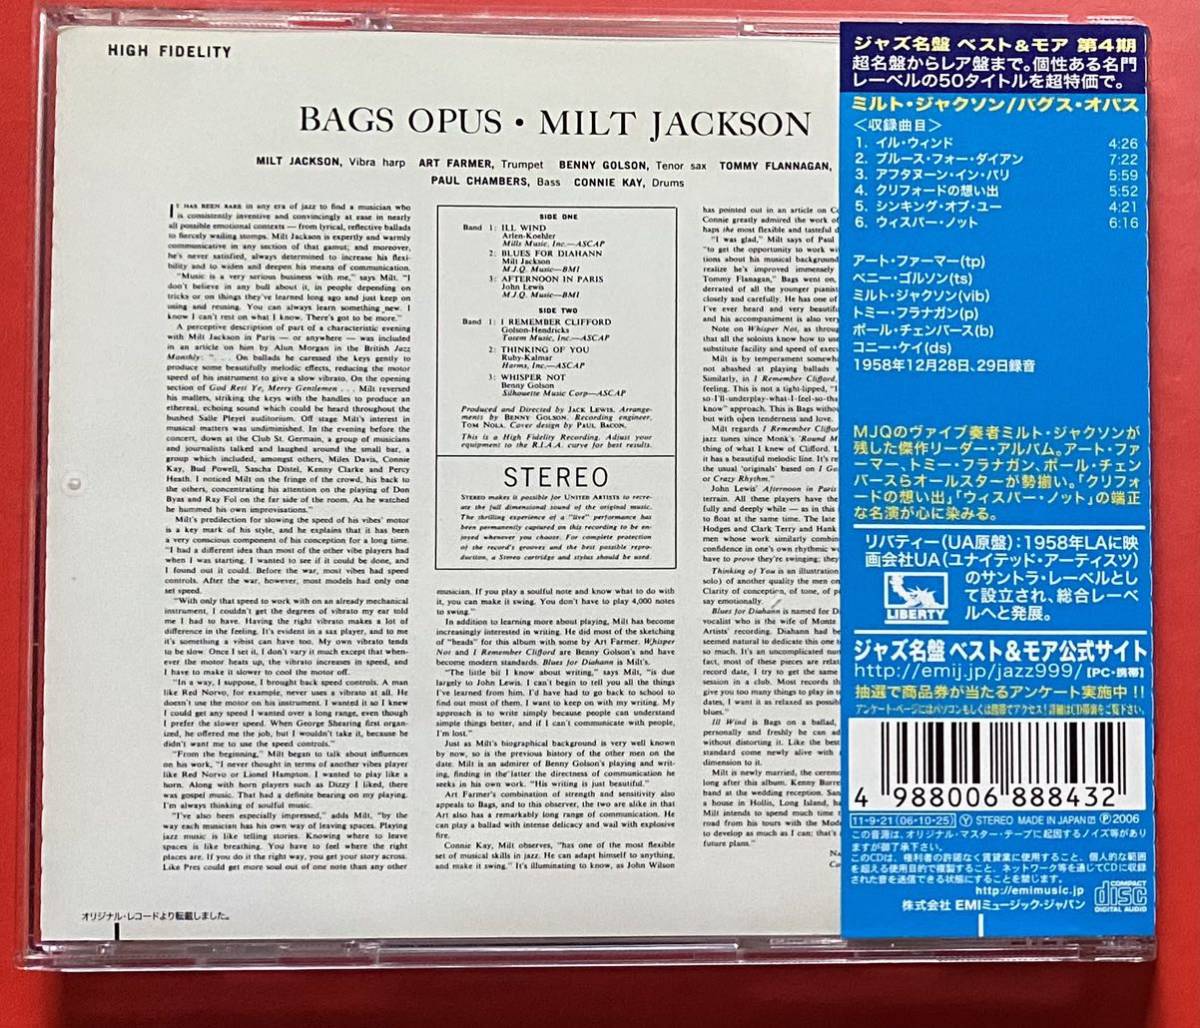 【美品CD】ミルト・ジャクソン「BAGS' OPUS」Milt Jackson 国内盤 [09210375]_画像2